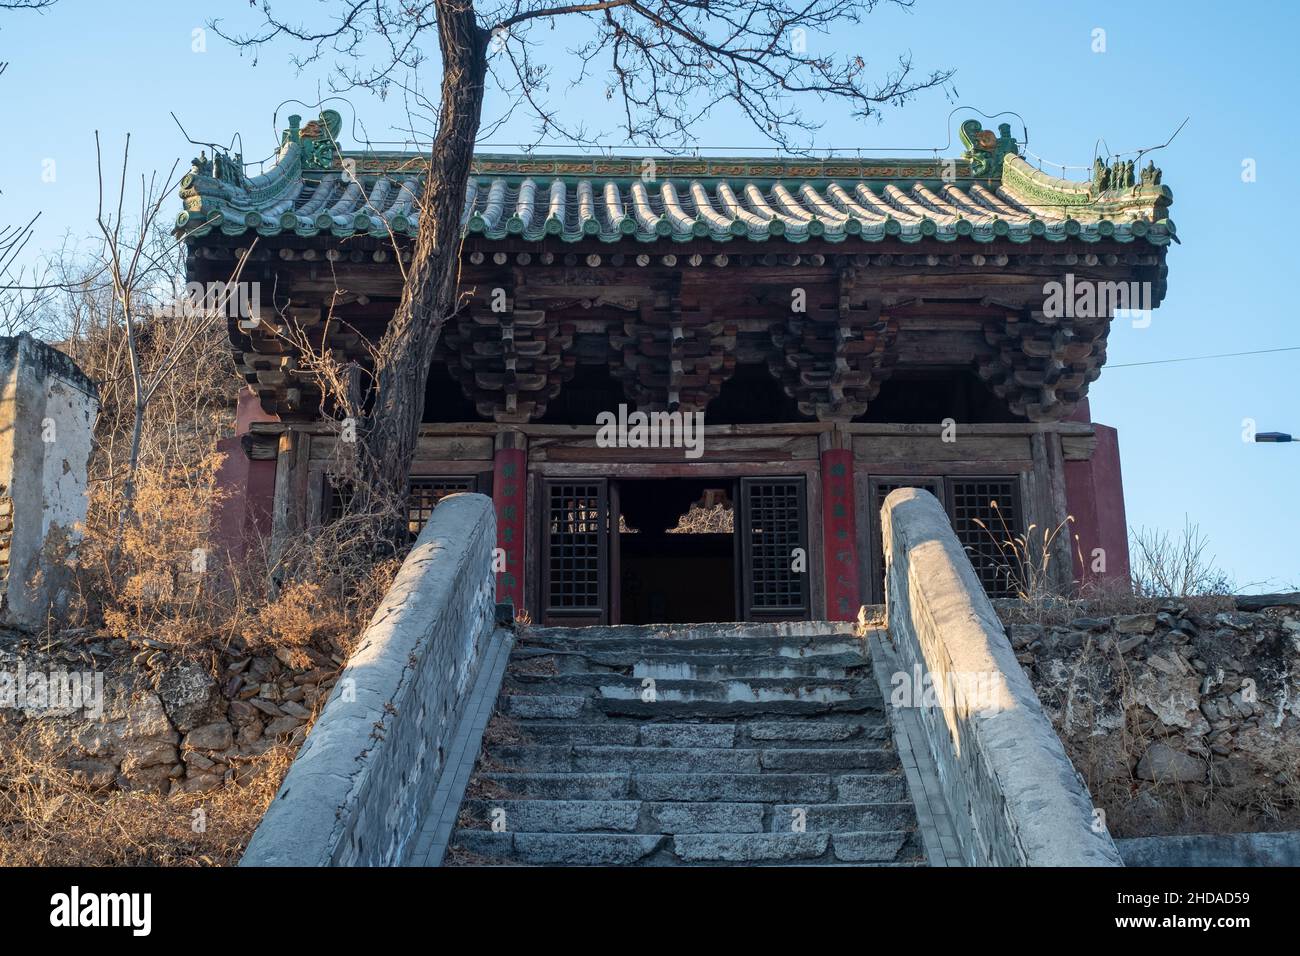 Dragon King Temple está situado en la aldea de Malan, la ciudad de Zhaitang, distrito de Mentougou, Beijing. Fue construido durante Liao（907-1125) o Jin (1115-1234). Foto de stock